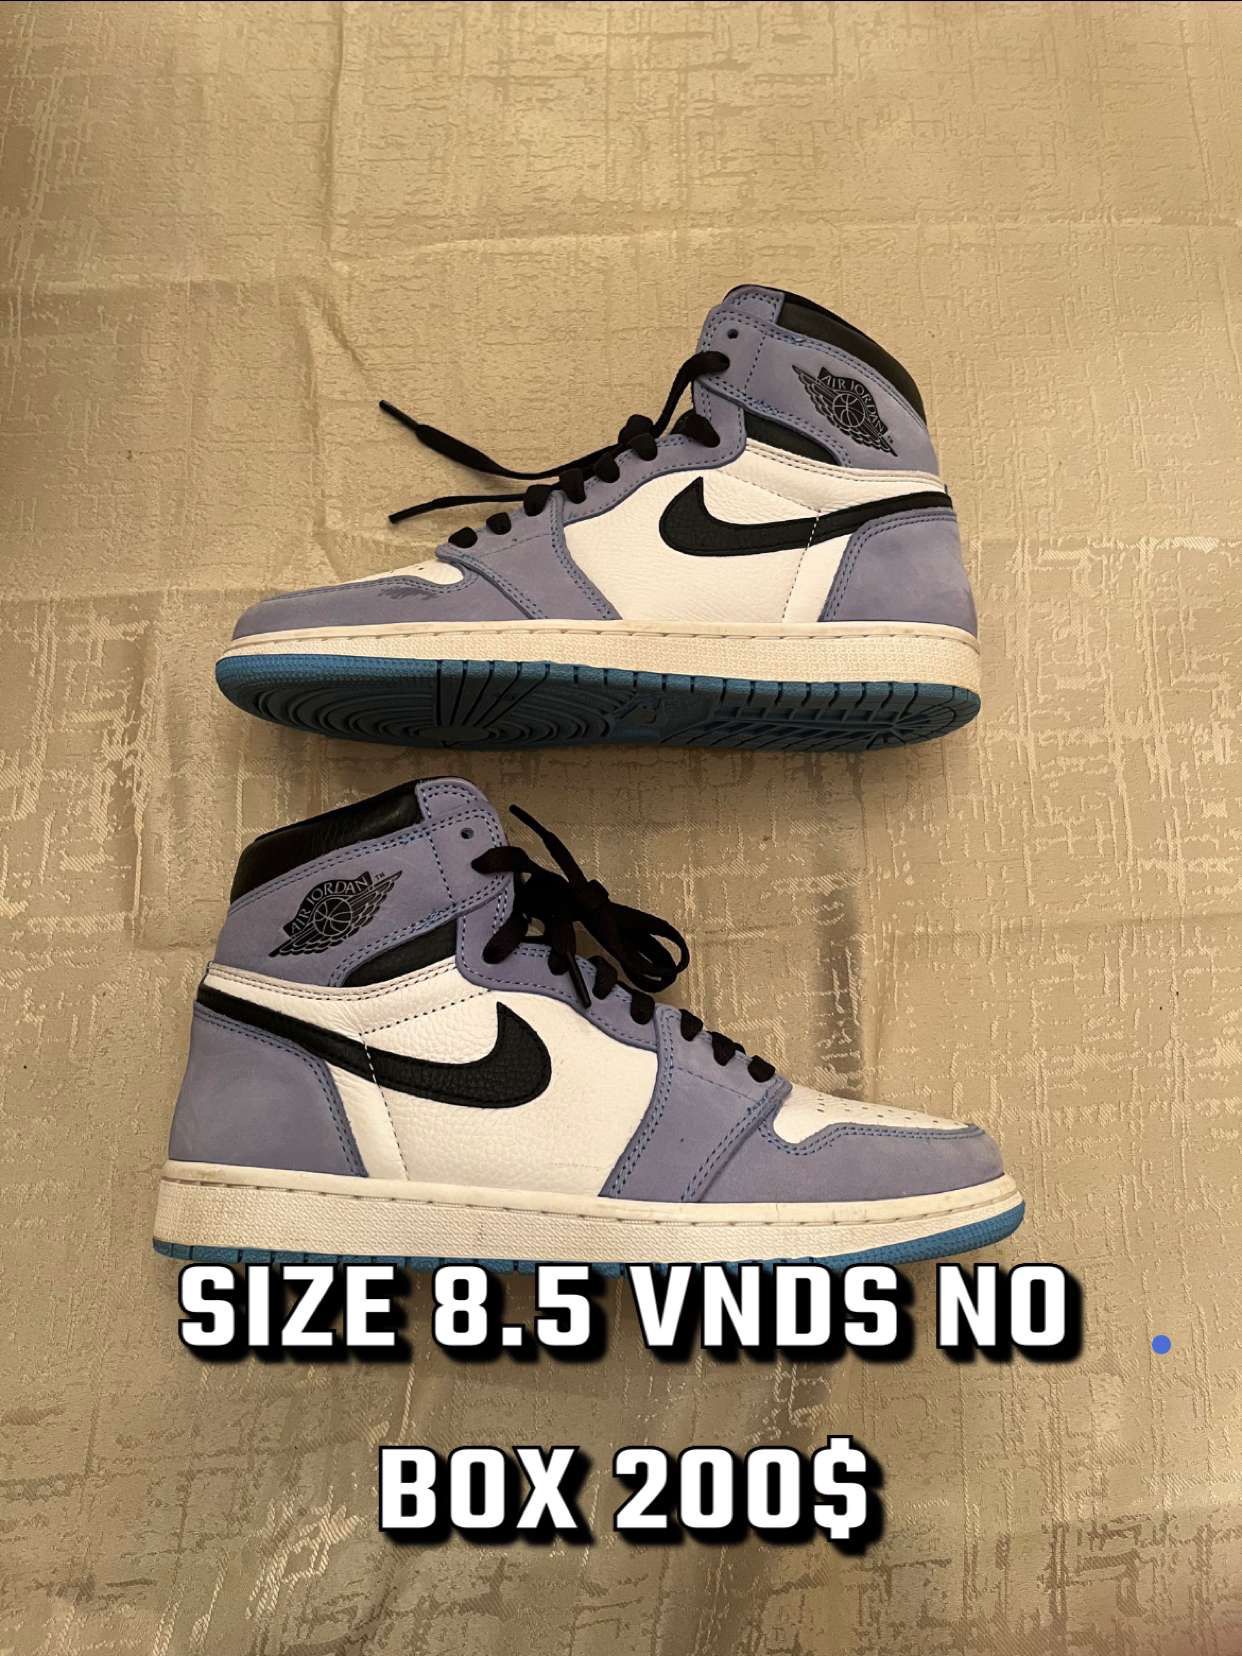 Nike And Jordan’s 